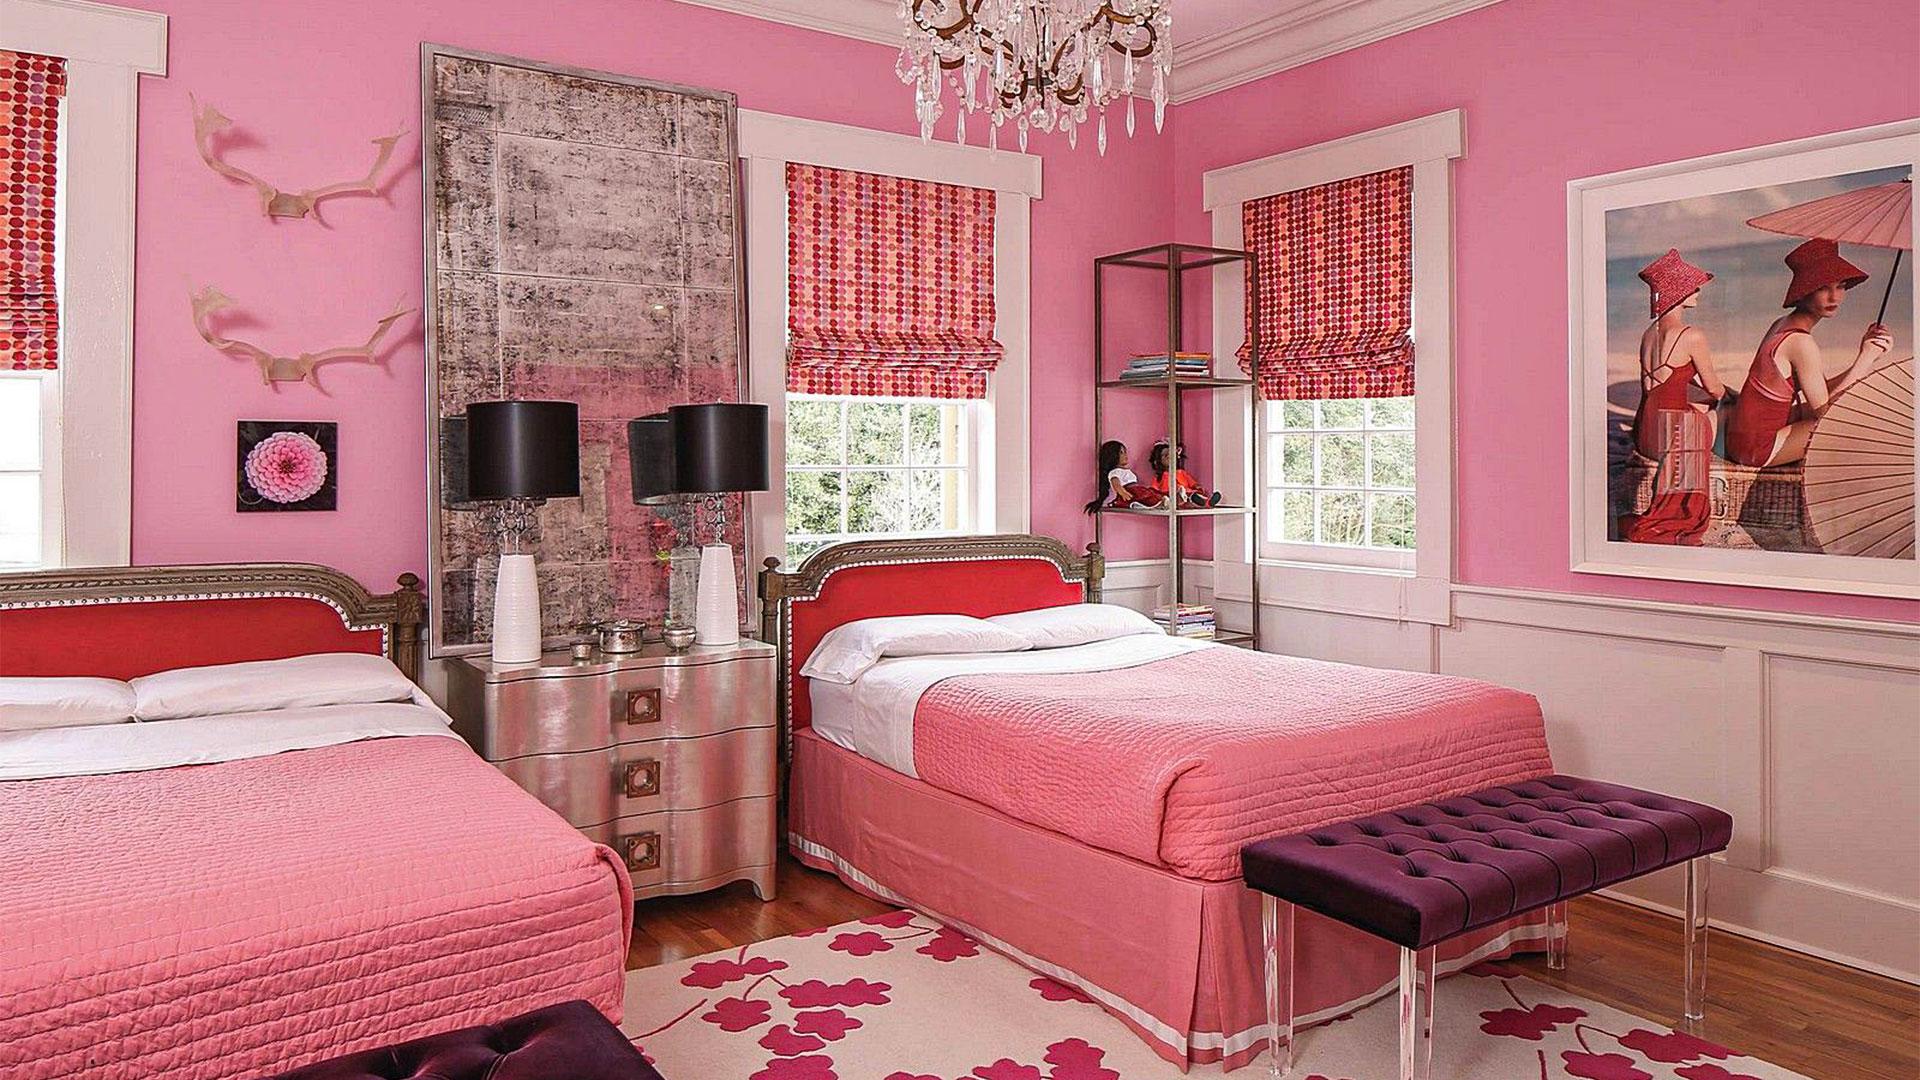 Комната в розовых тонах. Спальня для девочки в розовых тонах. Розовые стены в спальне. Спальня в розовых тонах. Розовый интерьер комнаты.